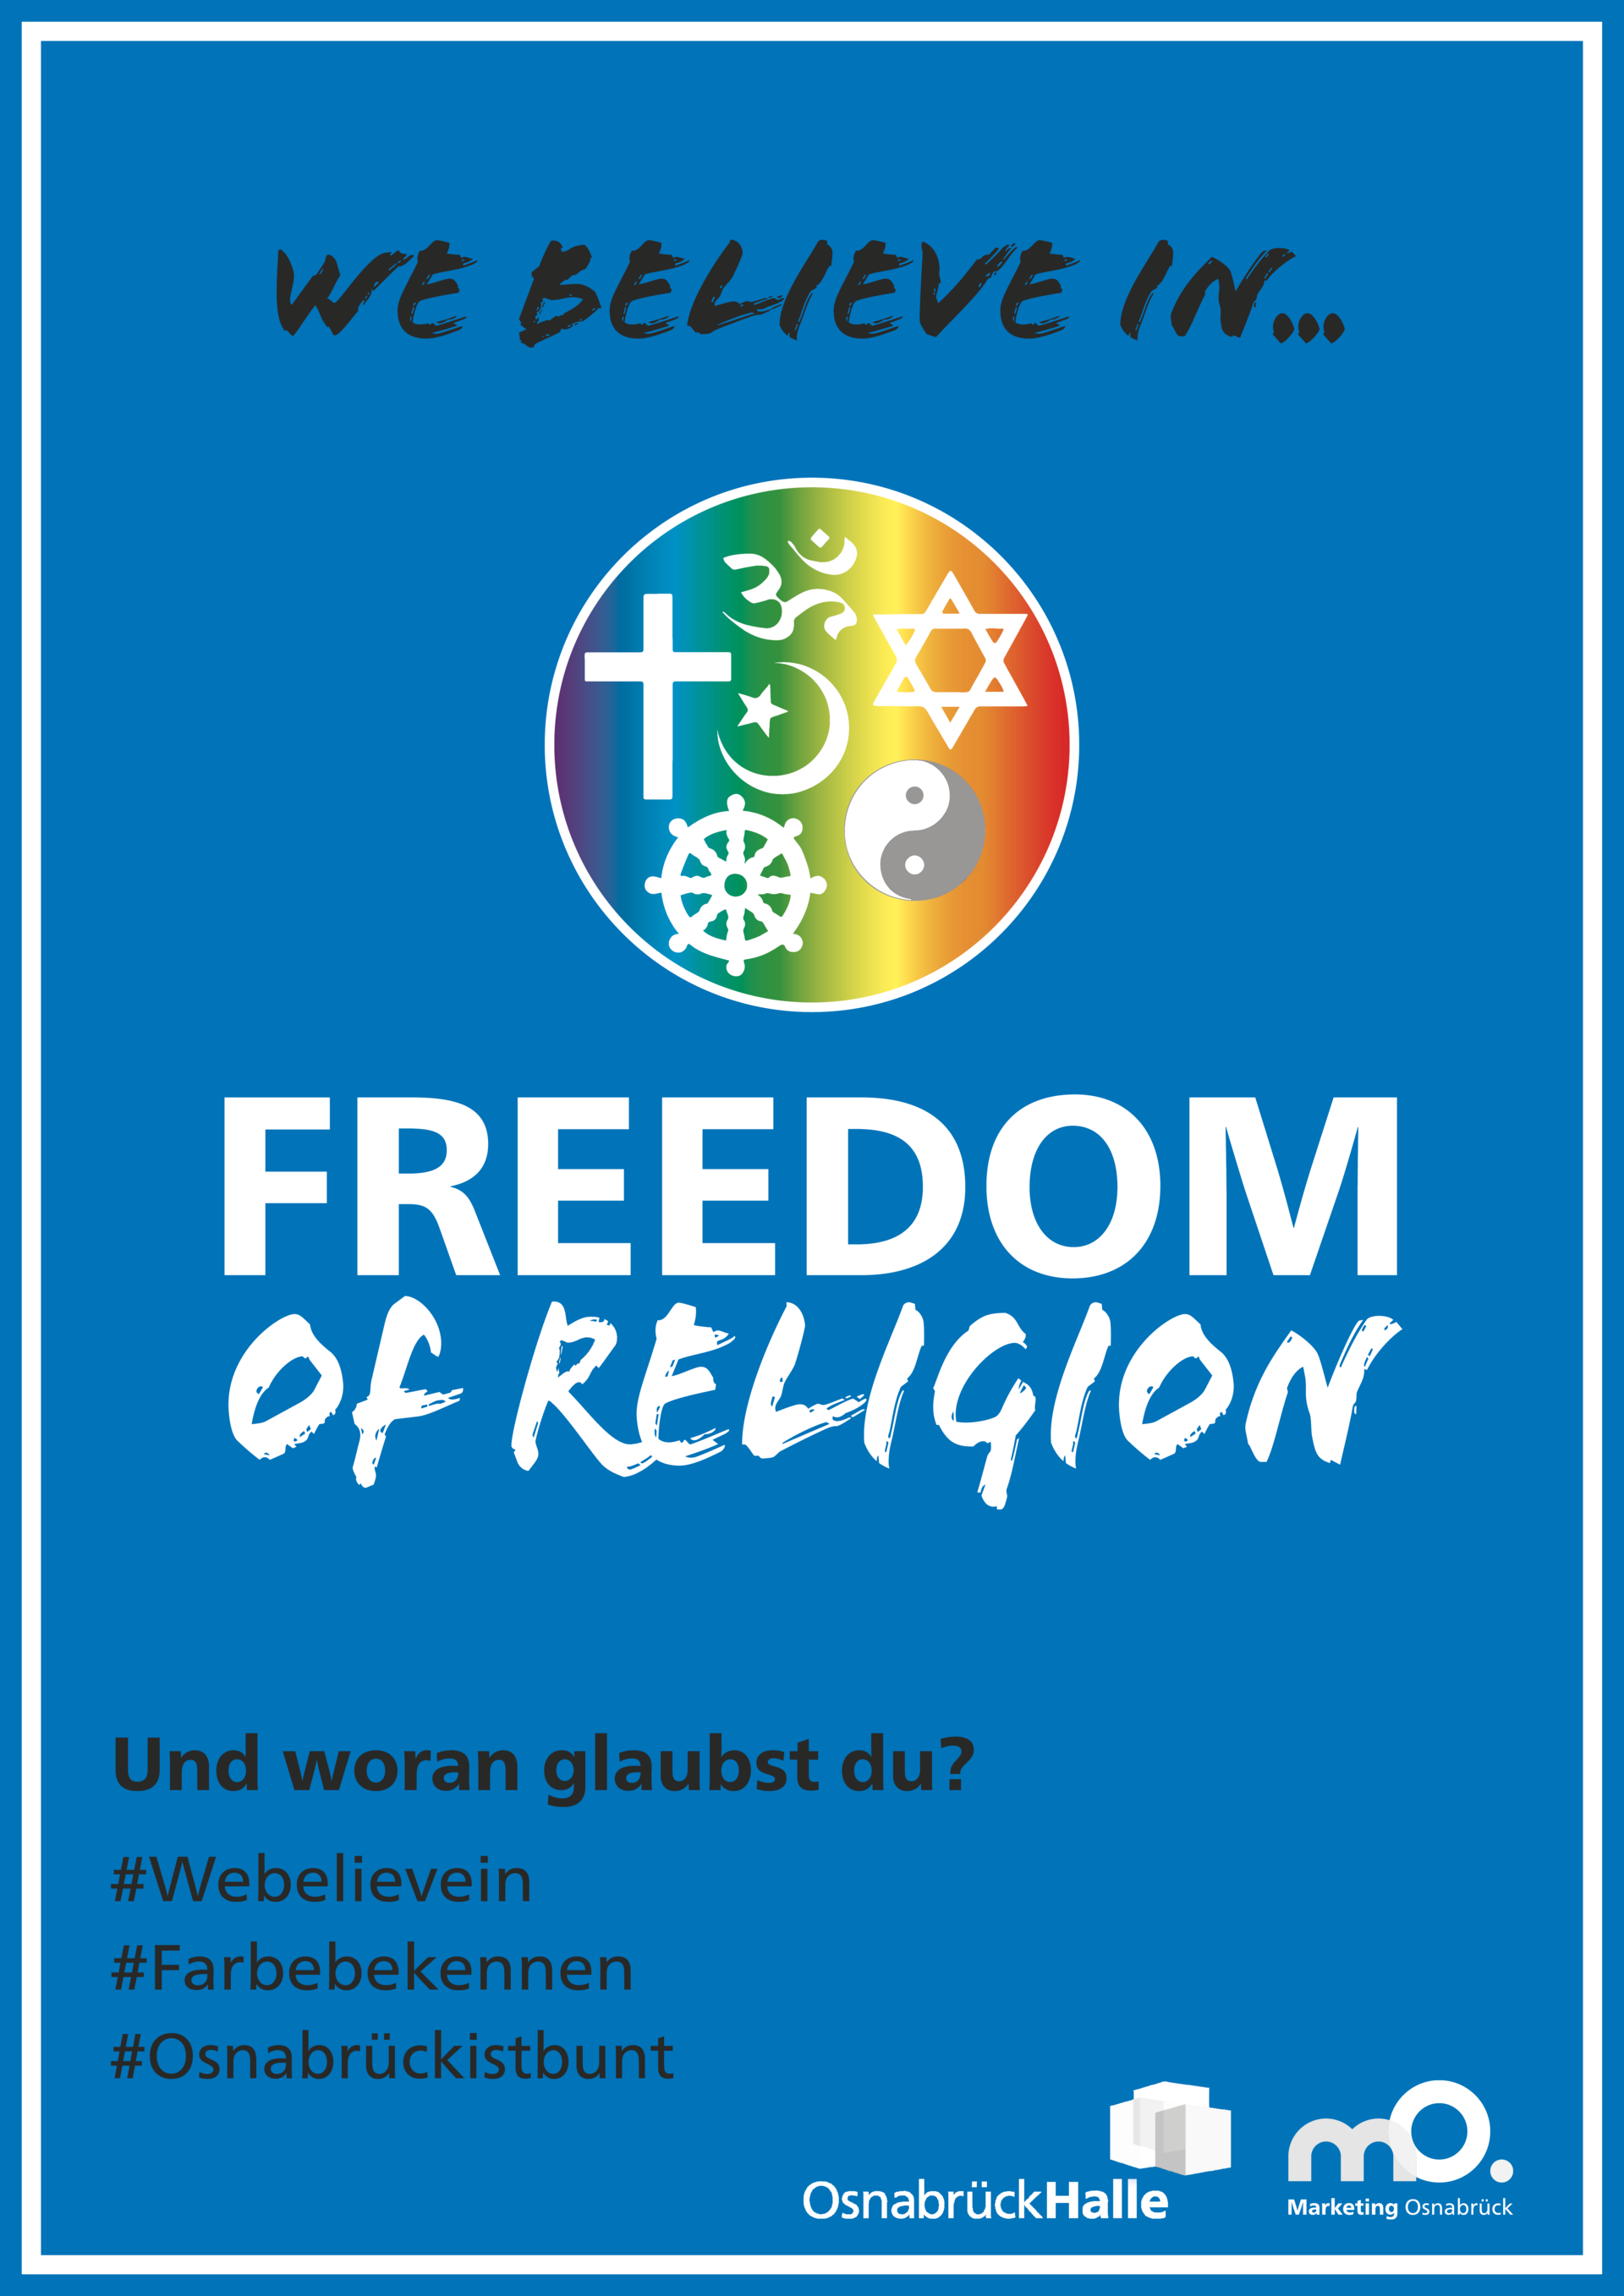 We believe in freedom of Religion